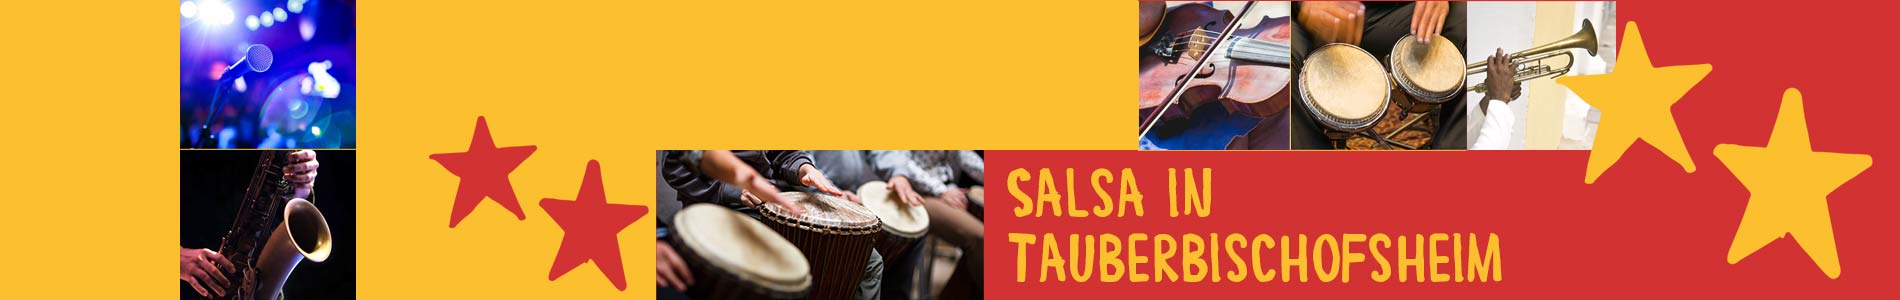 Salsa in Tauberbischofsheim – Salsa lernen und tanzen, Tanzkurse, Partys, Veranstaltungen